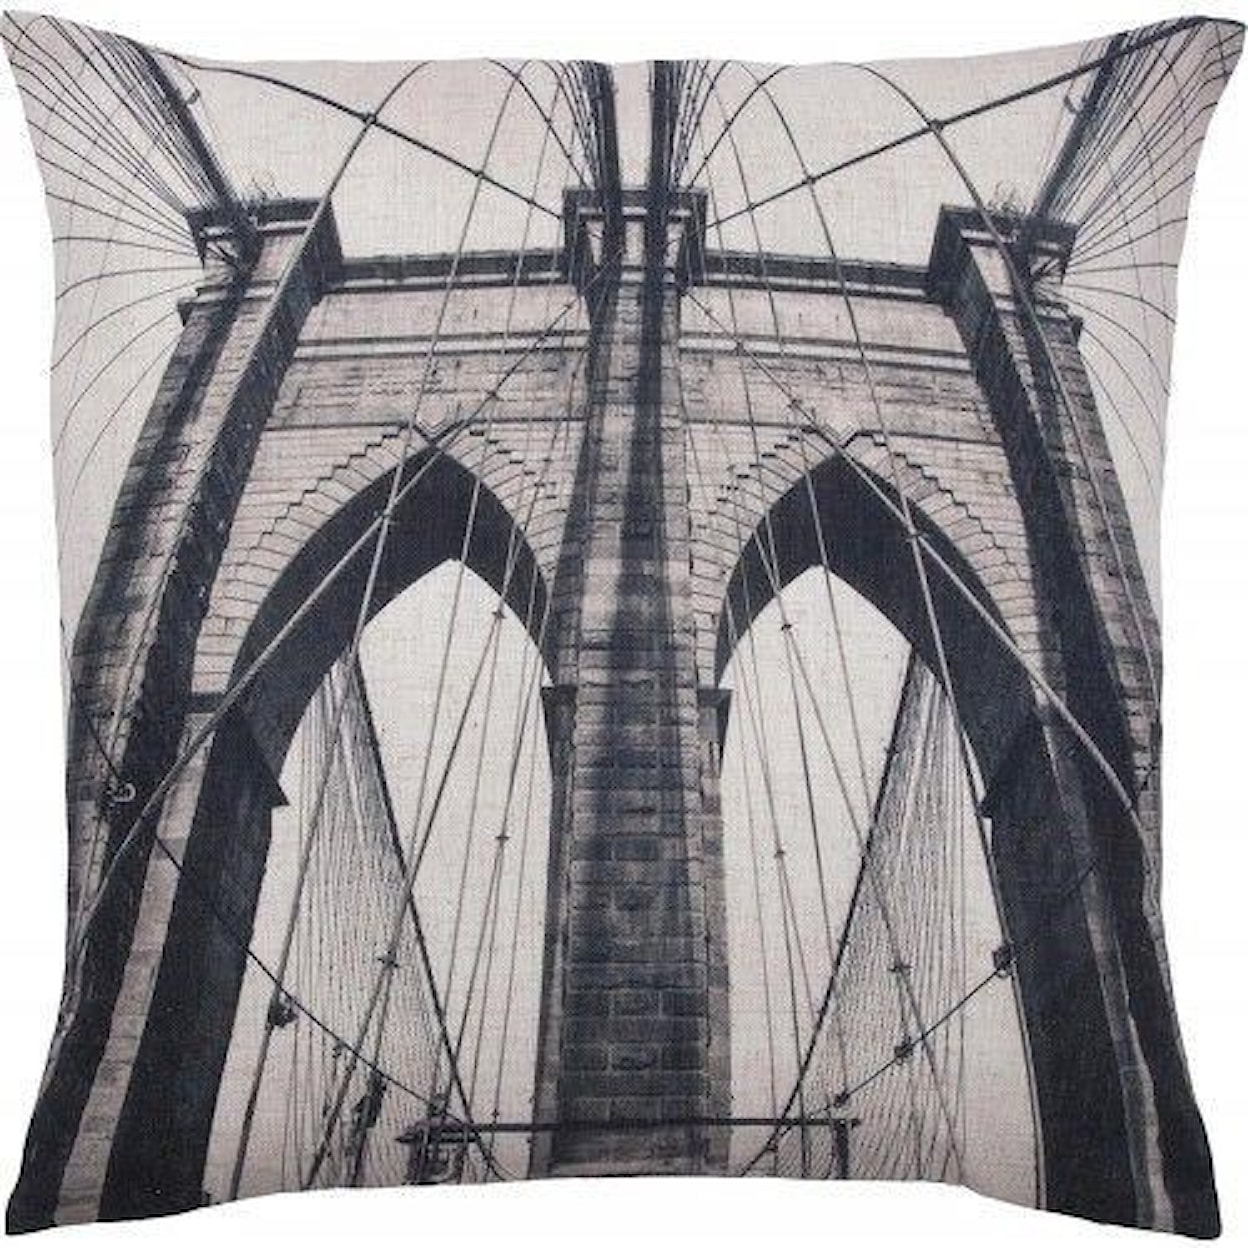 Ren-Wil Pillow Bridge Toss Pillow